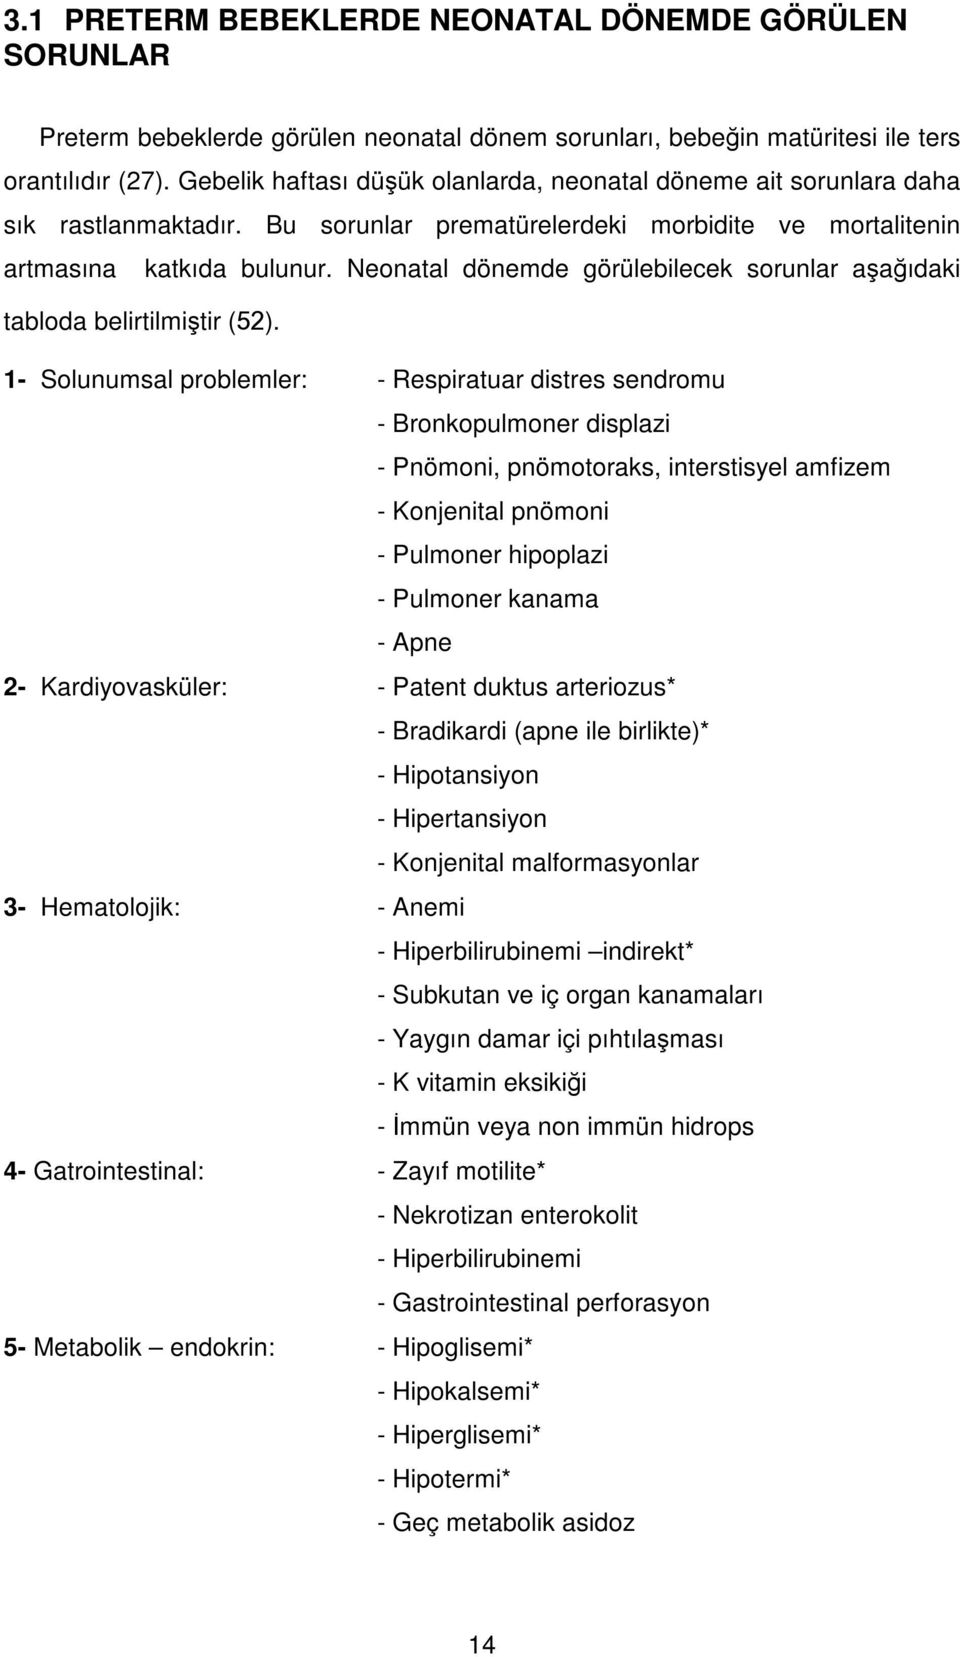 Neonatal dönemde görülebilecek sorunlar aşağıdaki tabloda belirtilmiştir (52).